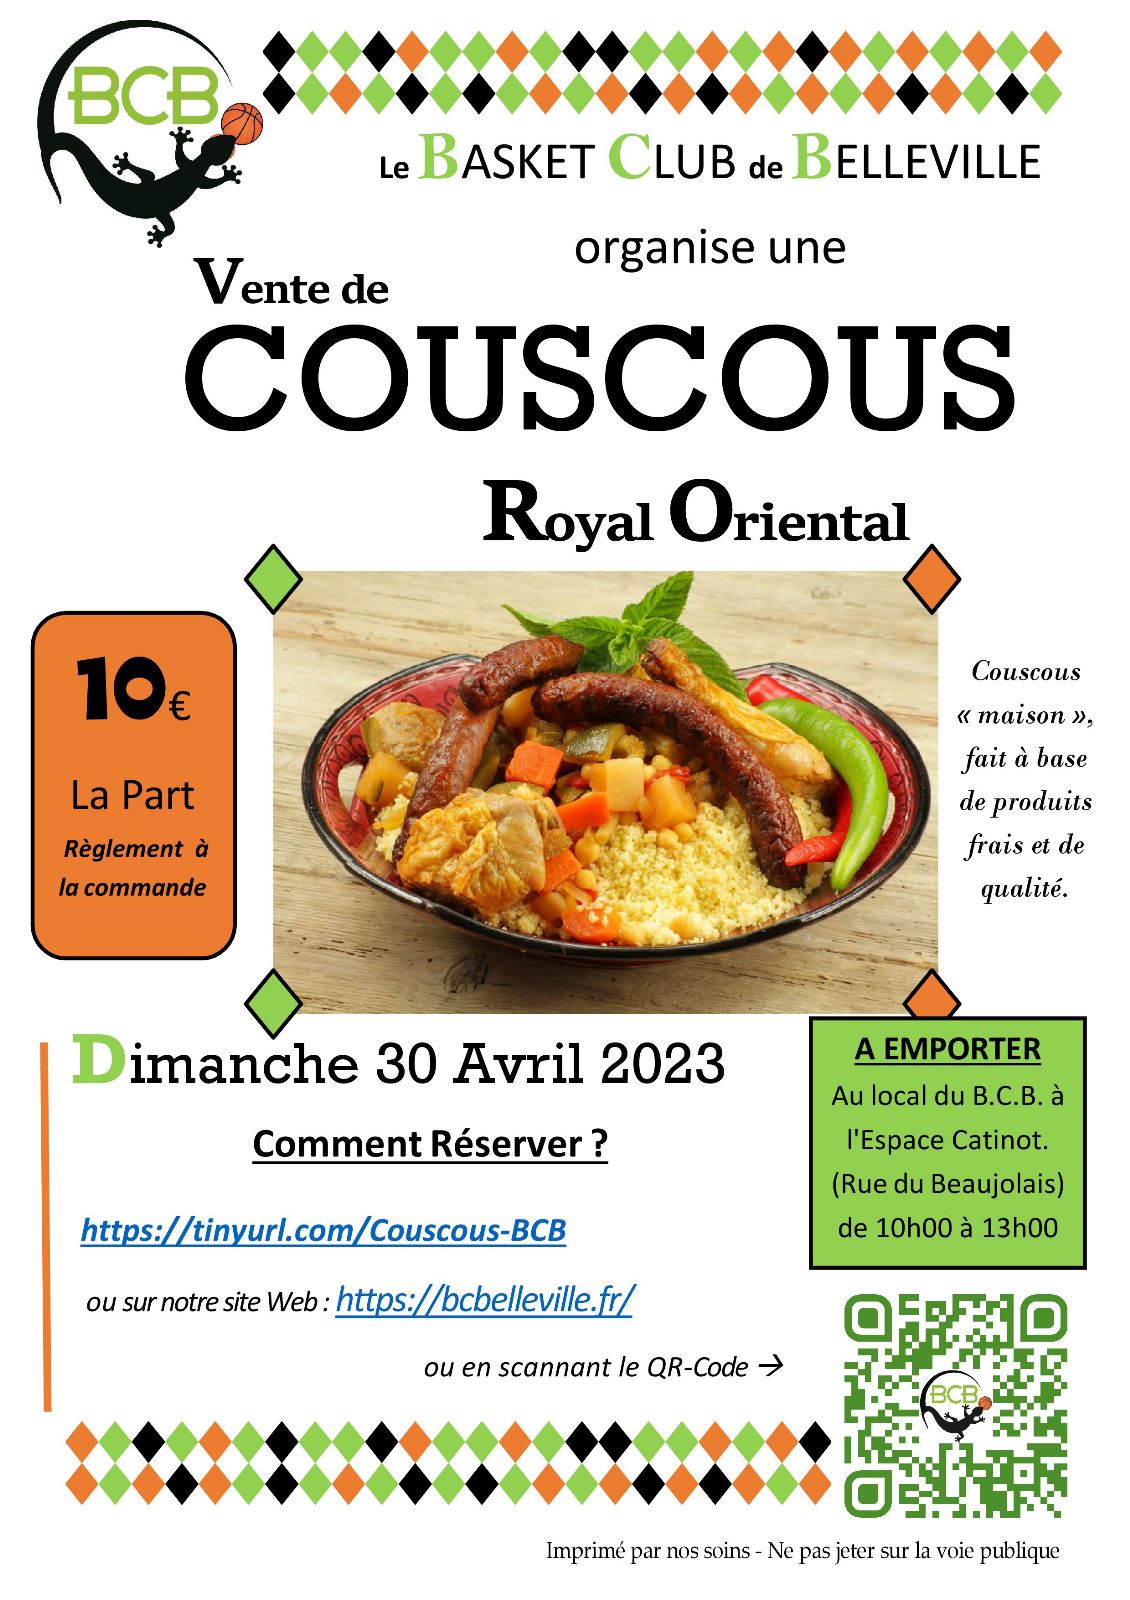 couscous,bcb,basket,belleville,2023